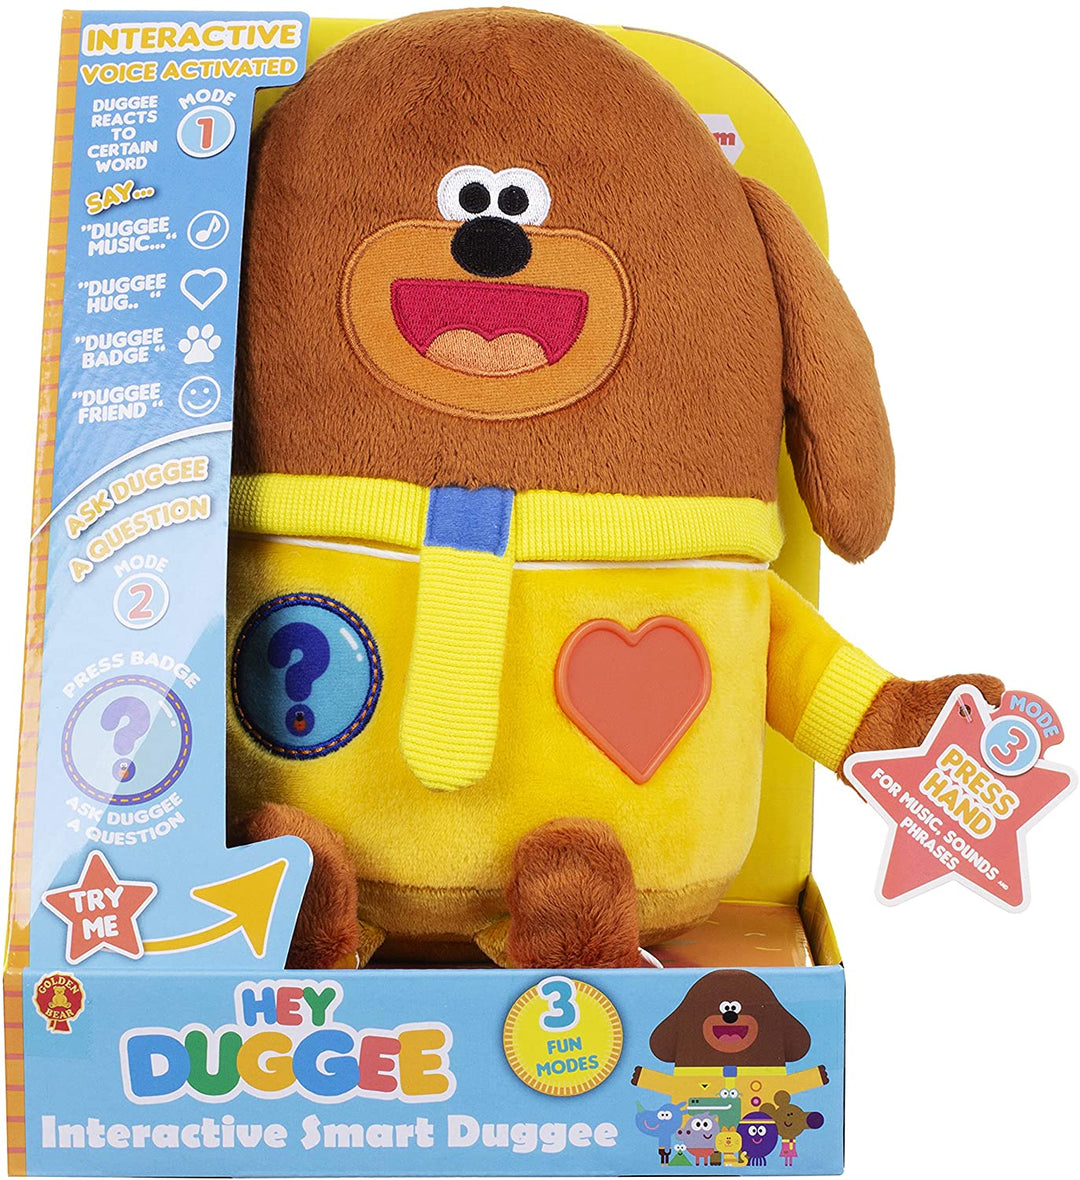 Oye Duggee Interactive Smart Soft Toy 3 formas de jugar activadas por voz ¡Haz preguntas Duggee Woofs! Con los sonidos de los programas de televisión se iluminan